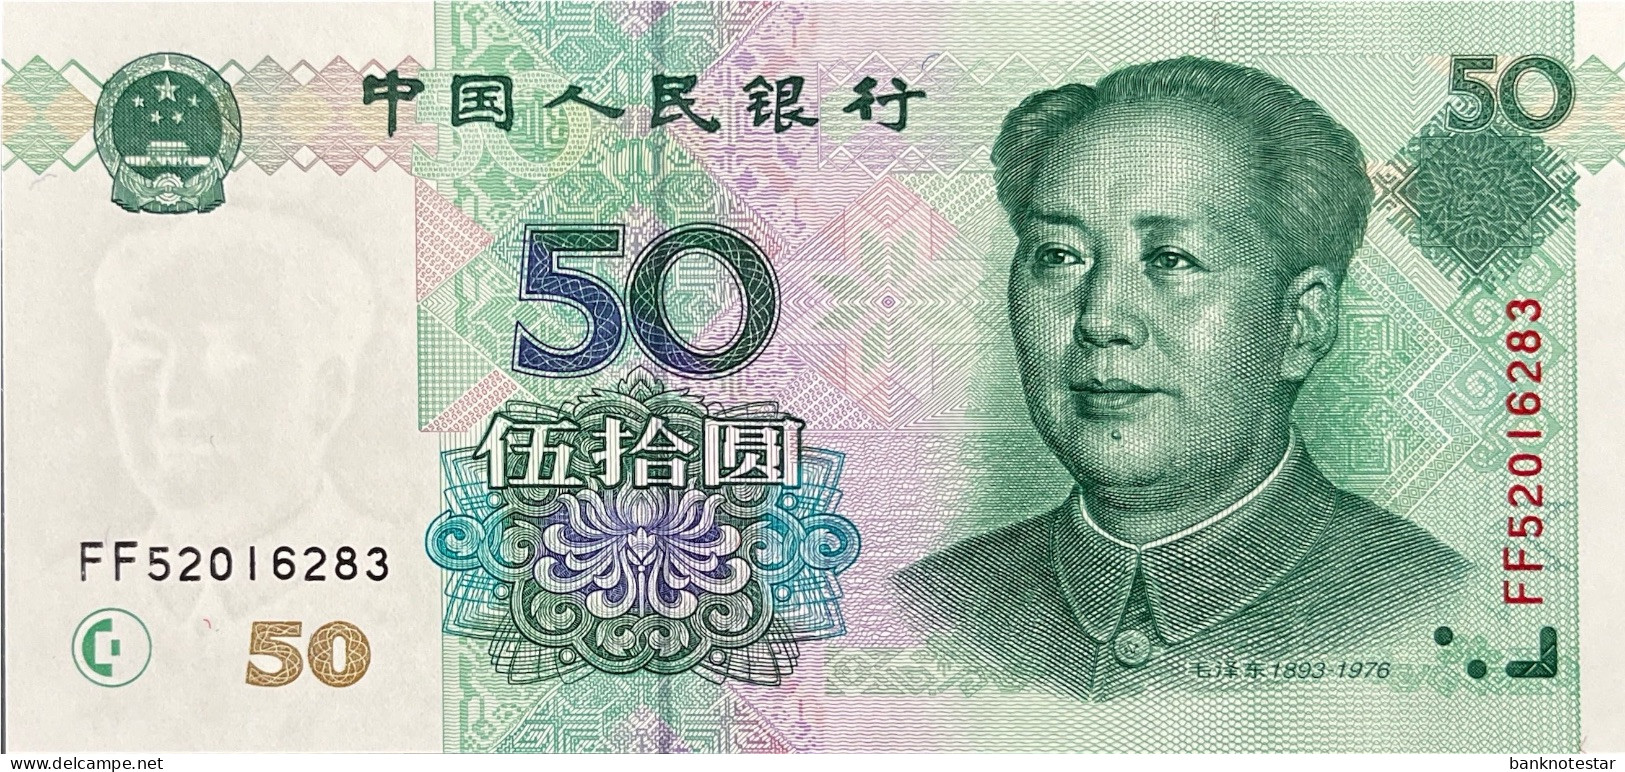 China 50 Yuan, P-900 (1999) - UNC - Chine